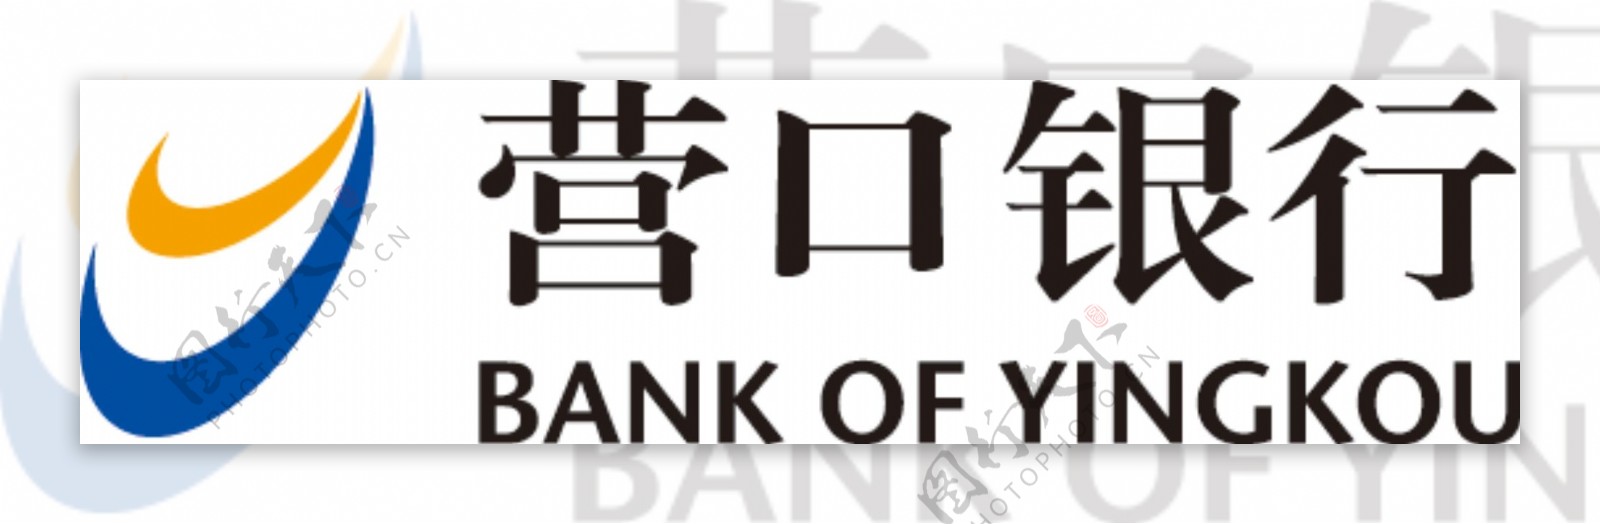 银行标志图片